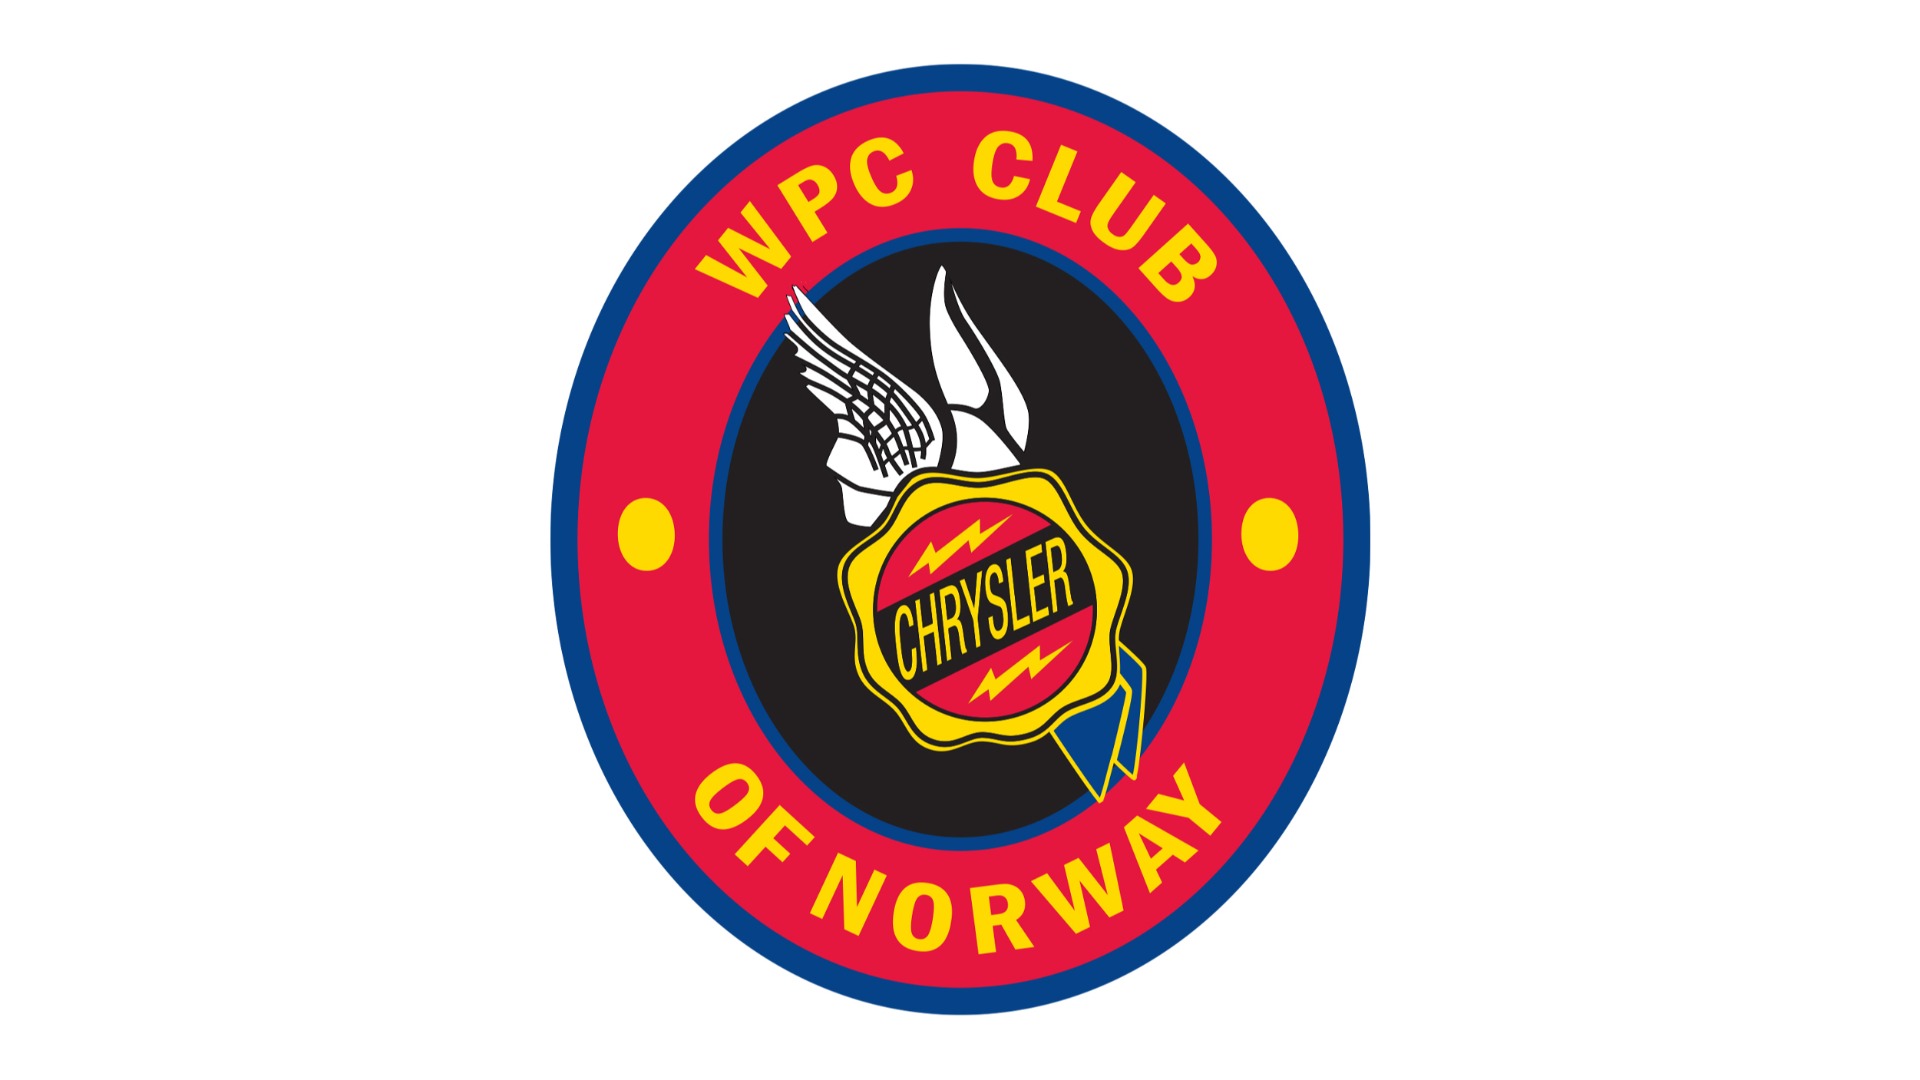 WPC+club+of+norway-Fullskjerm.jpg